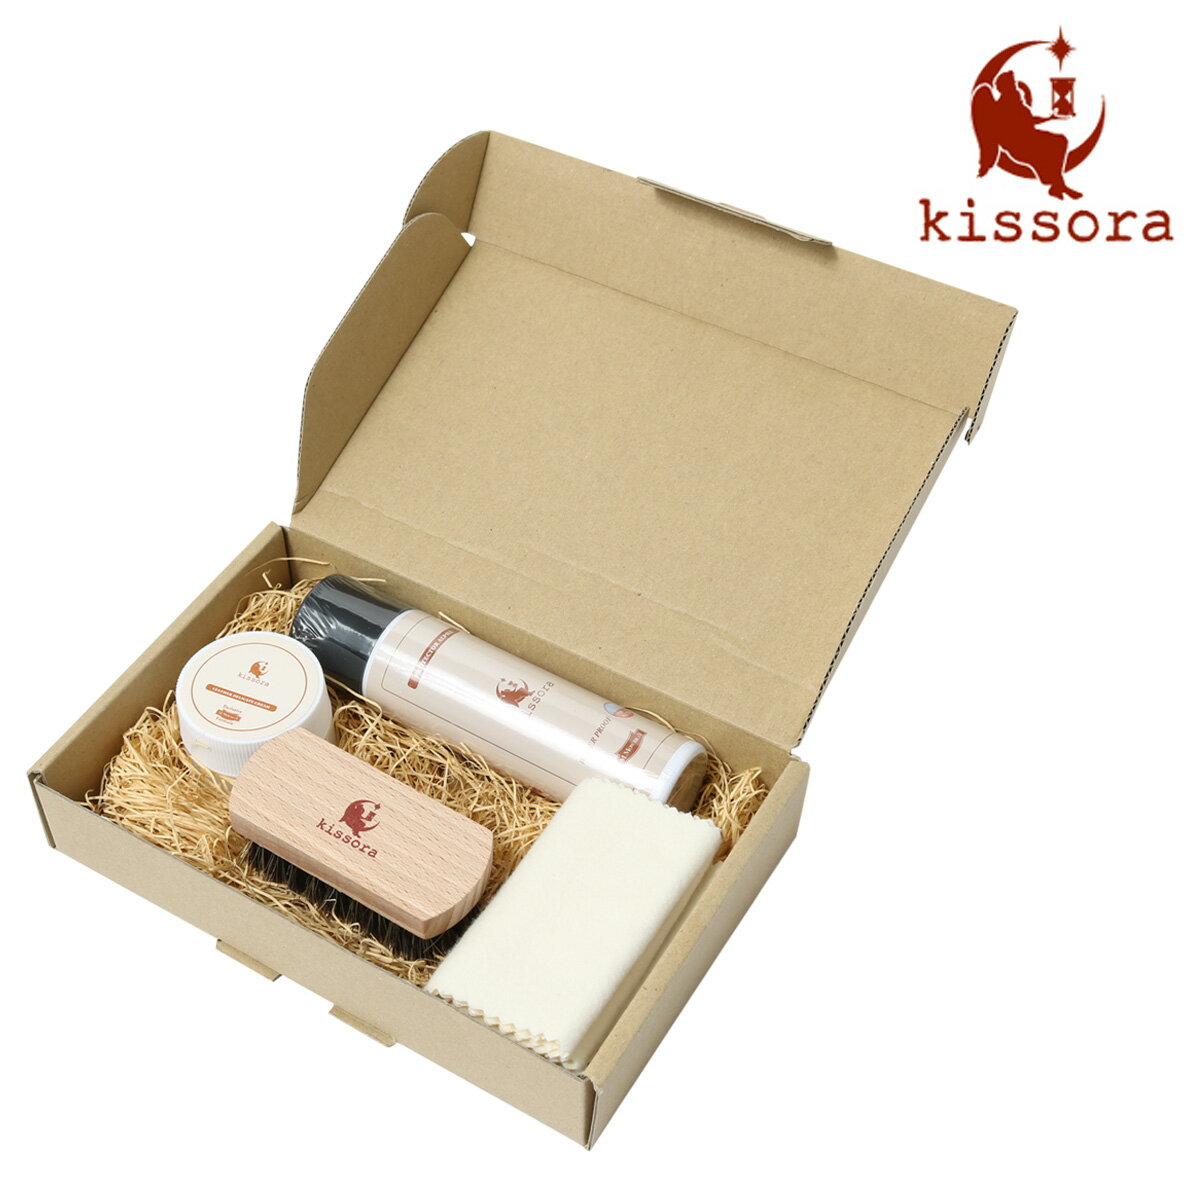 キソラ レザーケアセット 4点セットKIRD-006 kissora | 防水スプレー レザークリーム 革 お手入れ メンテナンス ケア用品